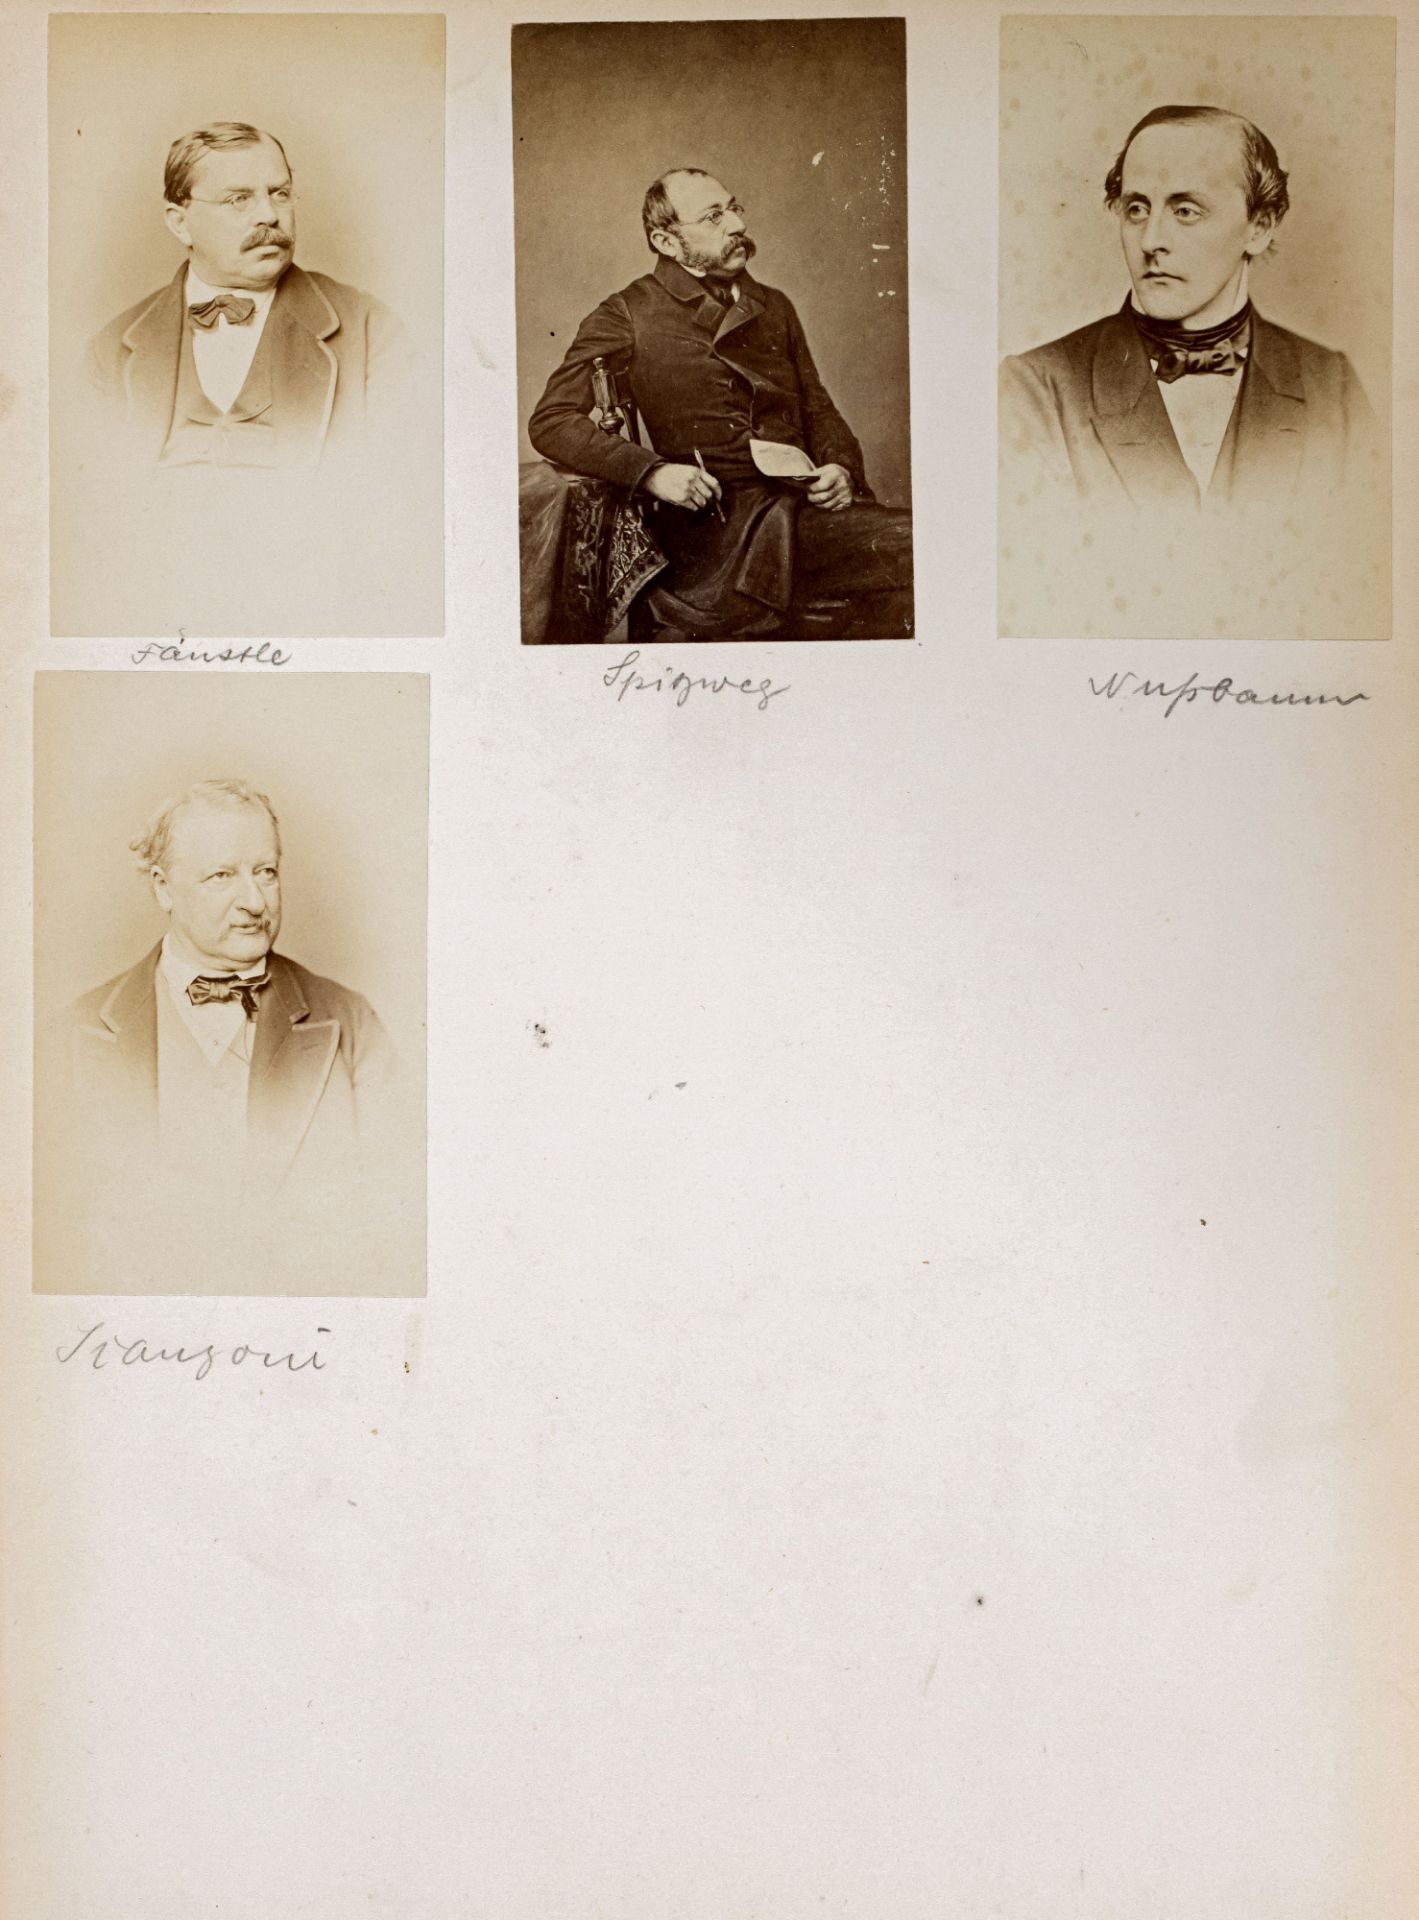 FOTOGRAFIE | Hanfstaengl, Franz | 1807 Baiernrain bei Tölz - 1877 München - Image 9 of 25